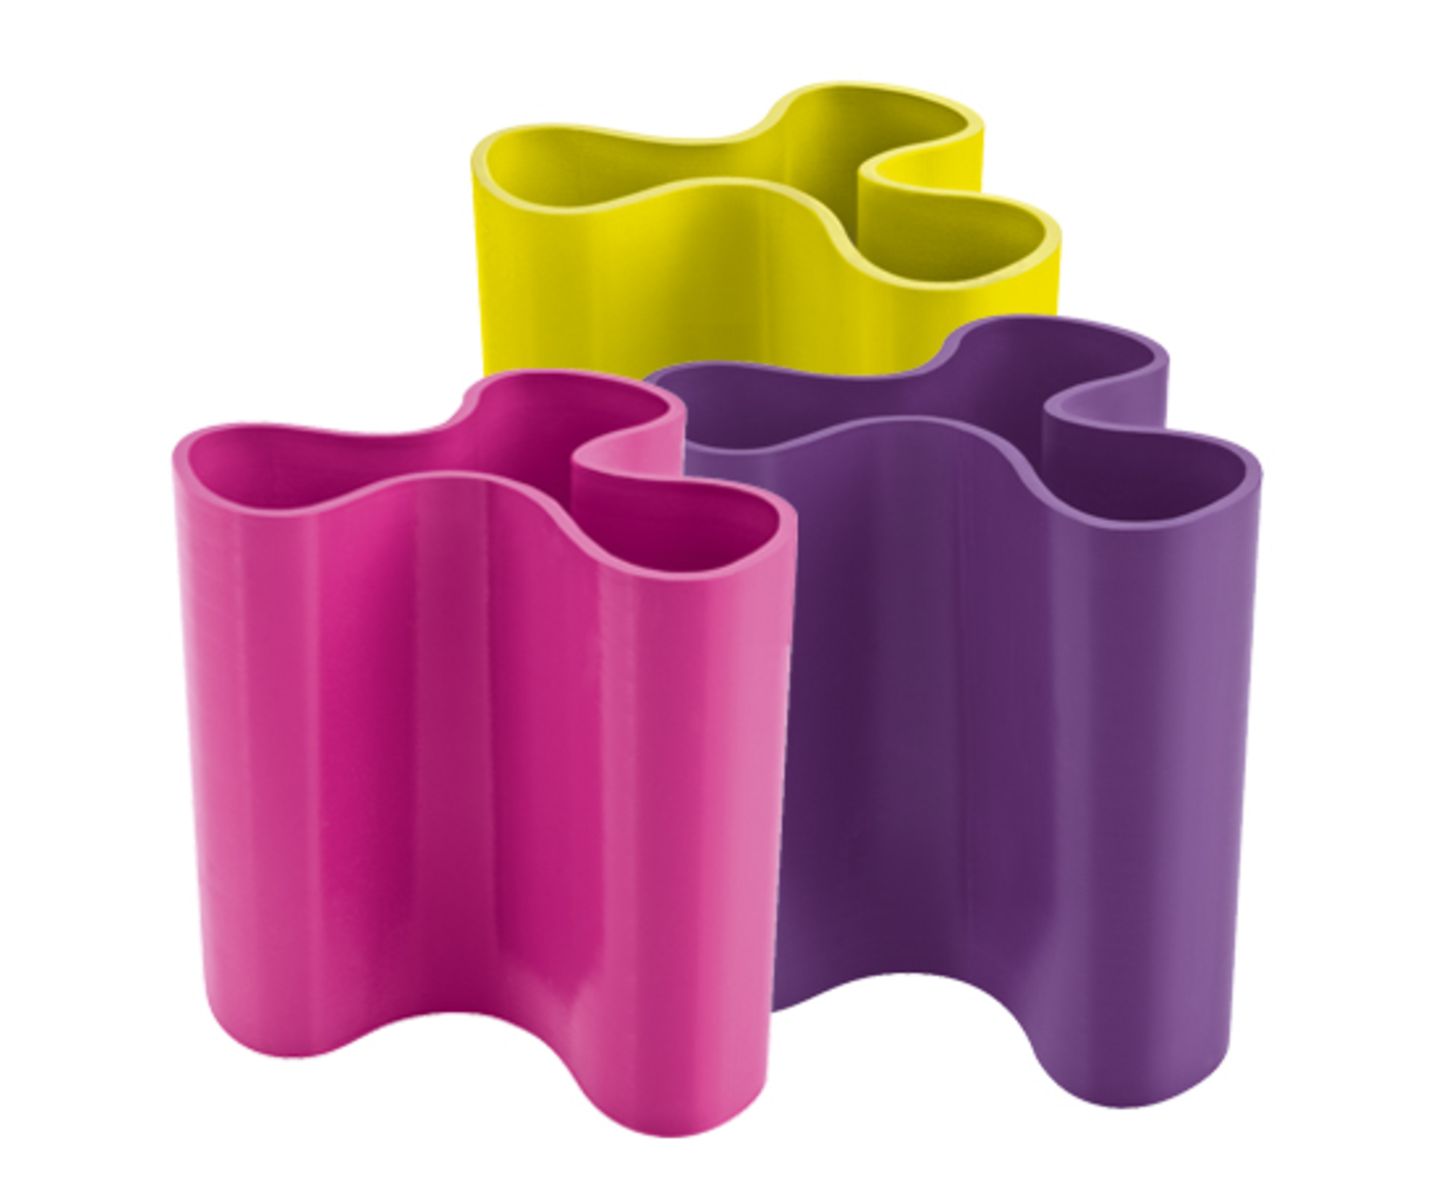 Vasen in Splash-Form von Design3000, je um 10 Euro. In verschiedenen Farben erhältlich.